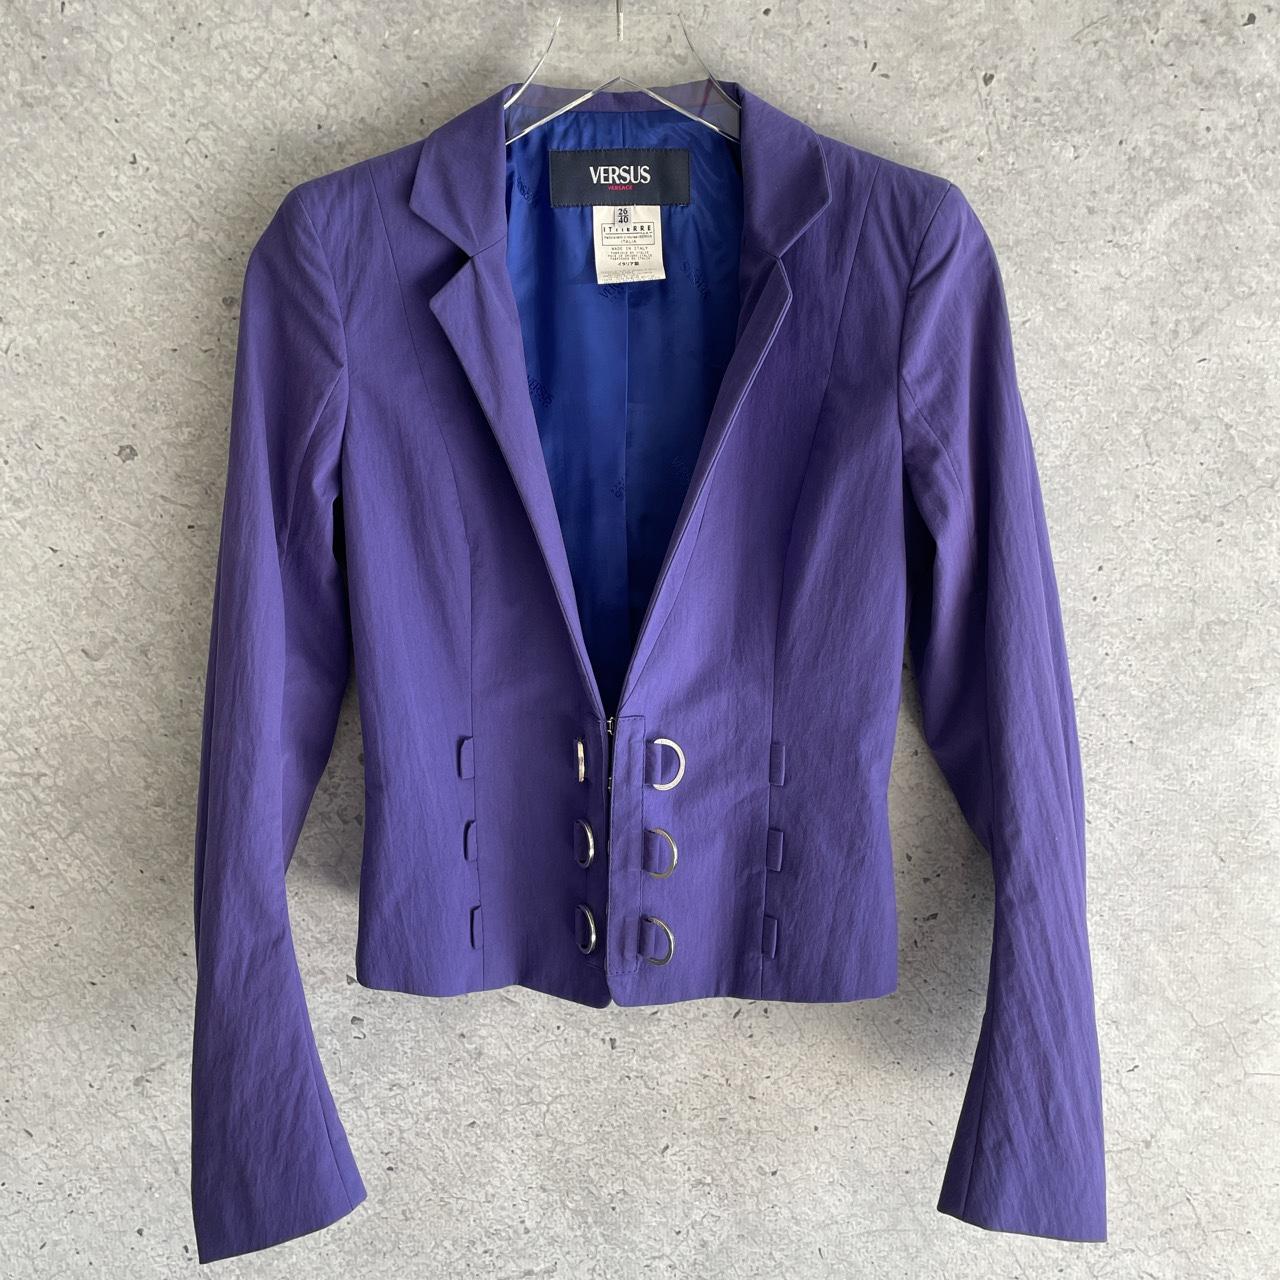 Versus Women's Purple Jacket (4)